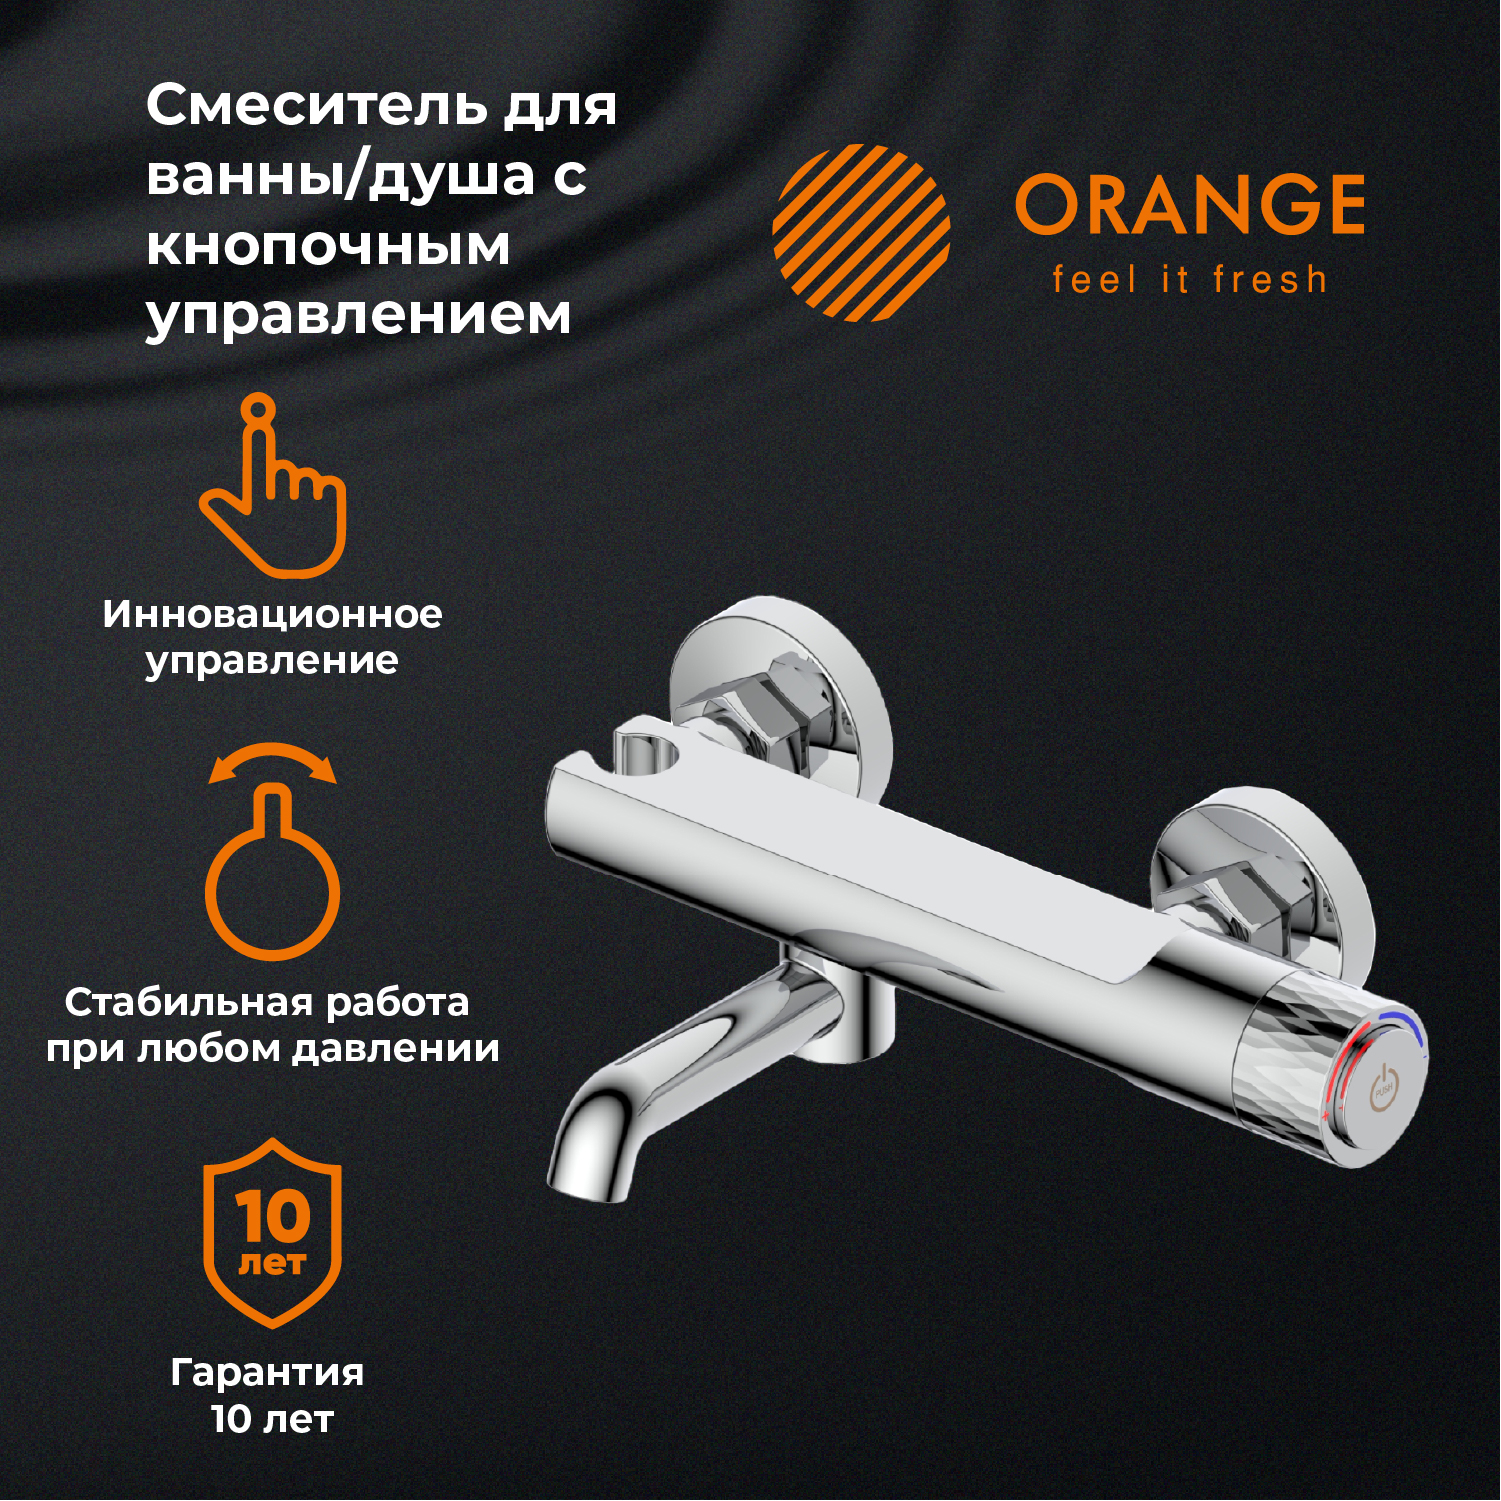 Смеситель для ванны и душа с кнопочным управлением Orange PURE M02-100cr цвет хром смеситель для ванны и душа с кнопочным управлением orange push m01 100cr хром